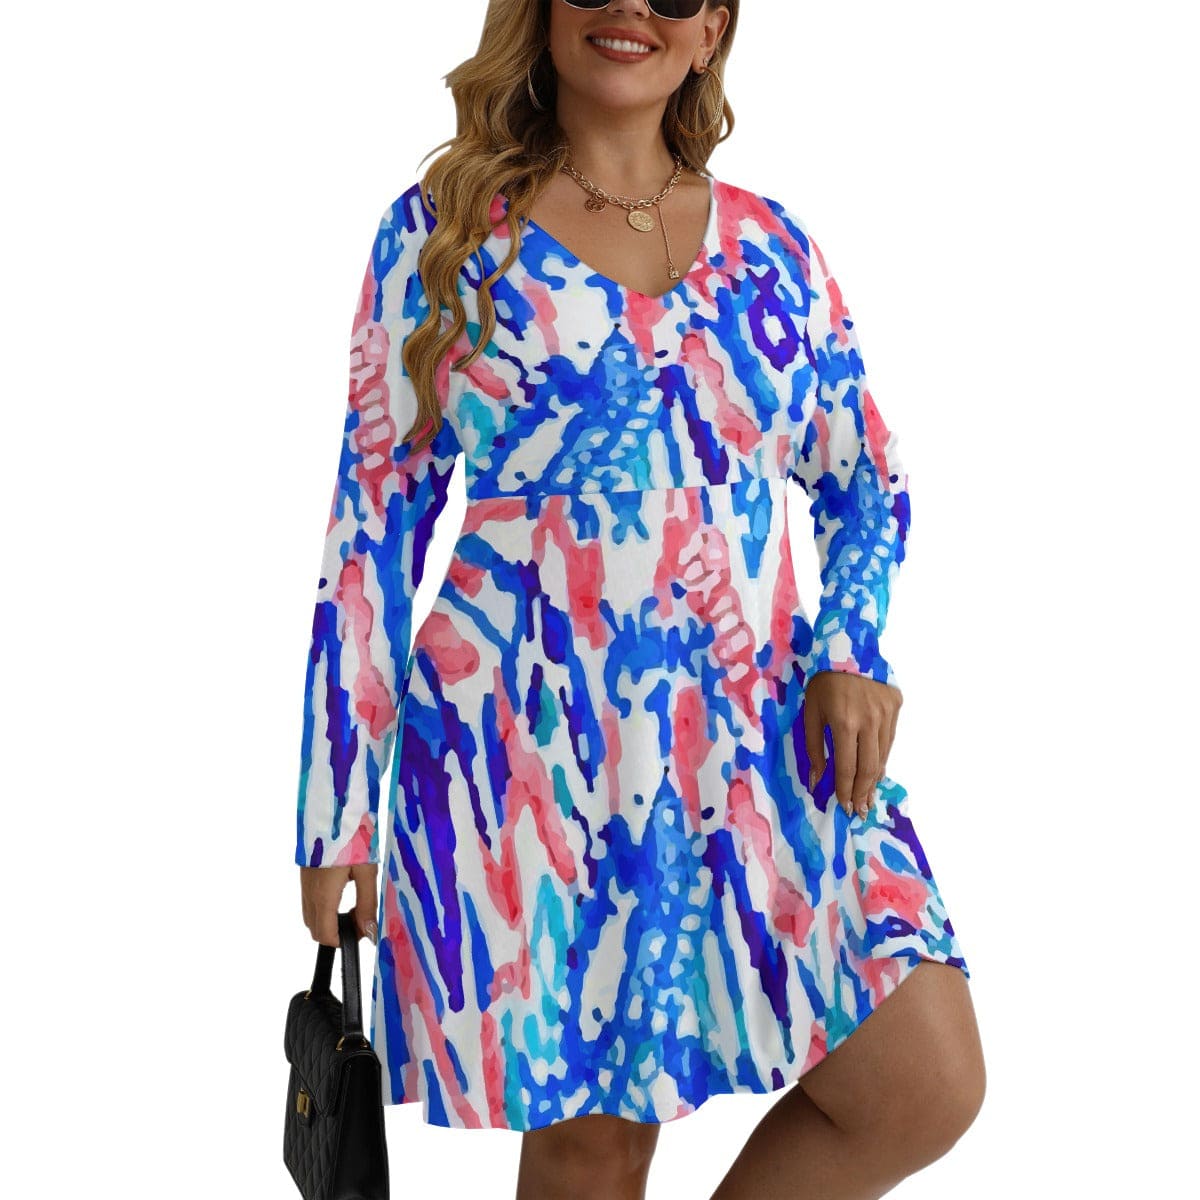 Yoycol Plus Dress 2XL / Multi Print Multi Print Women's Long Sleeve Dress - L-5XL